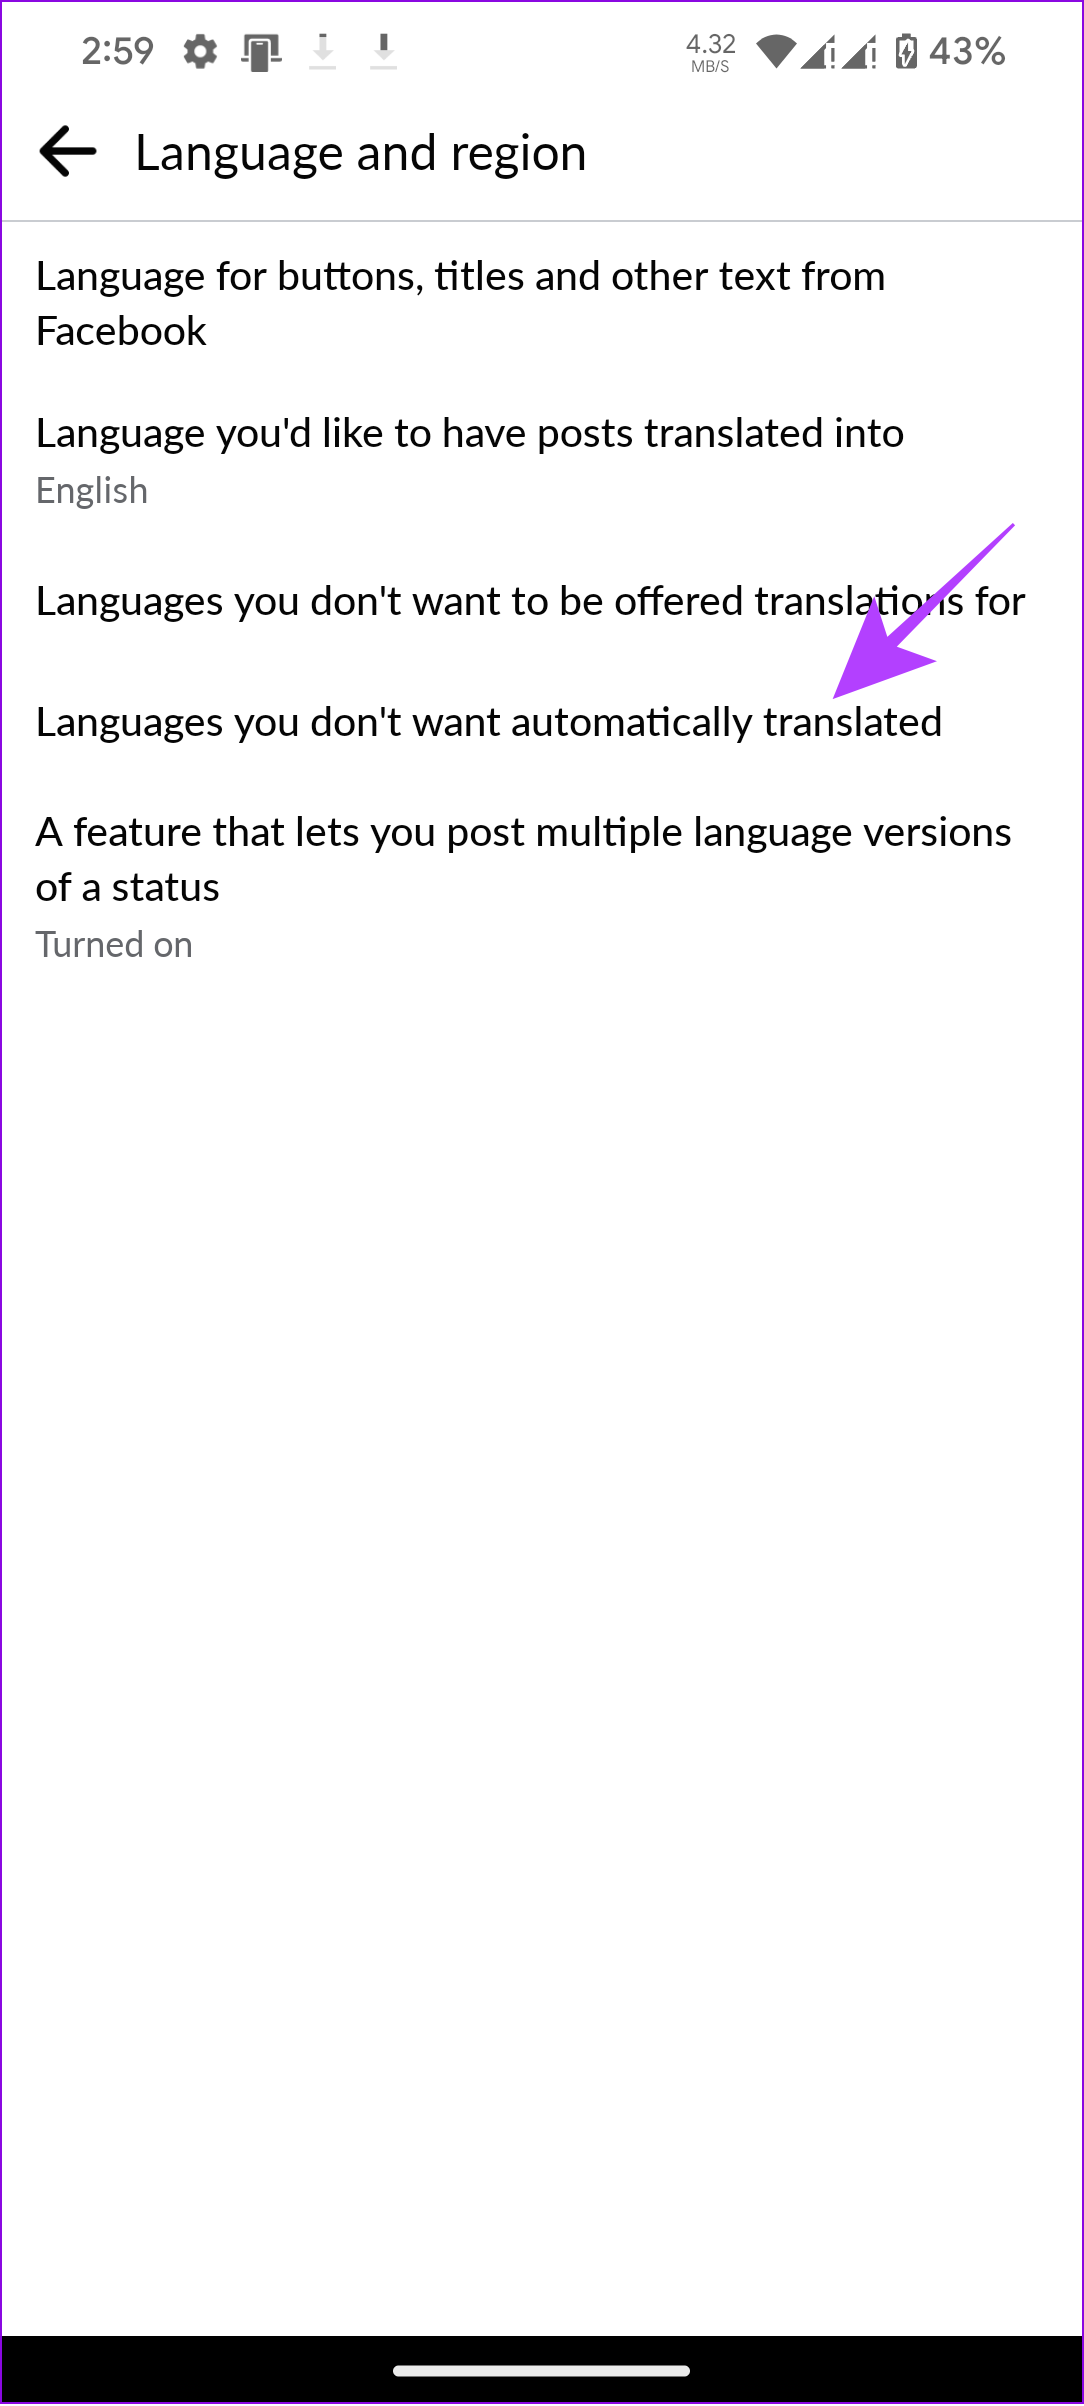 زبان هایی را انتخاب کنید که نمی خواهید به صورت خودکار ترجمه شوند